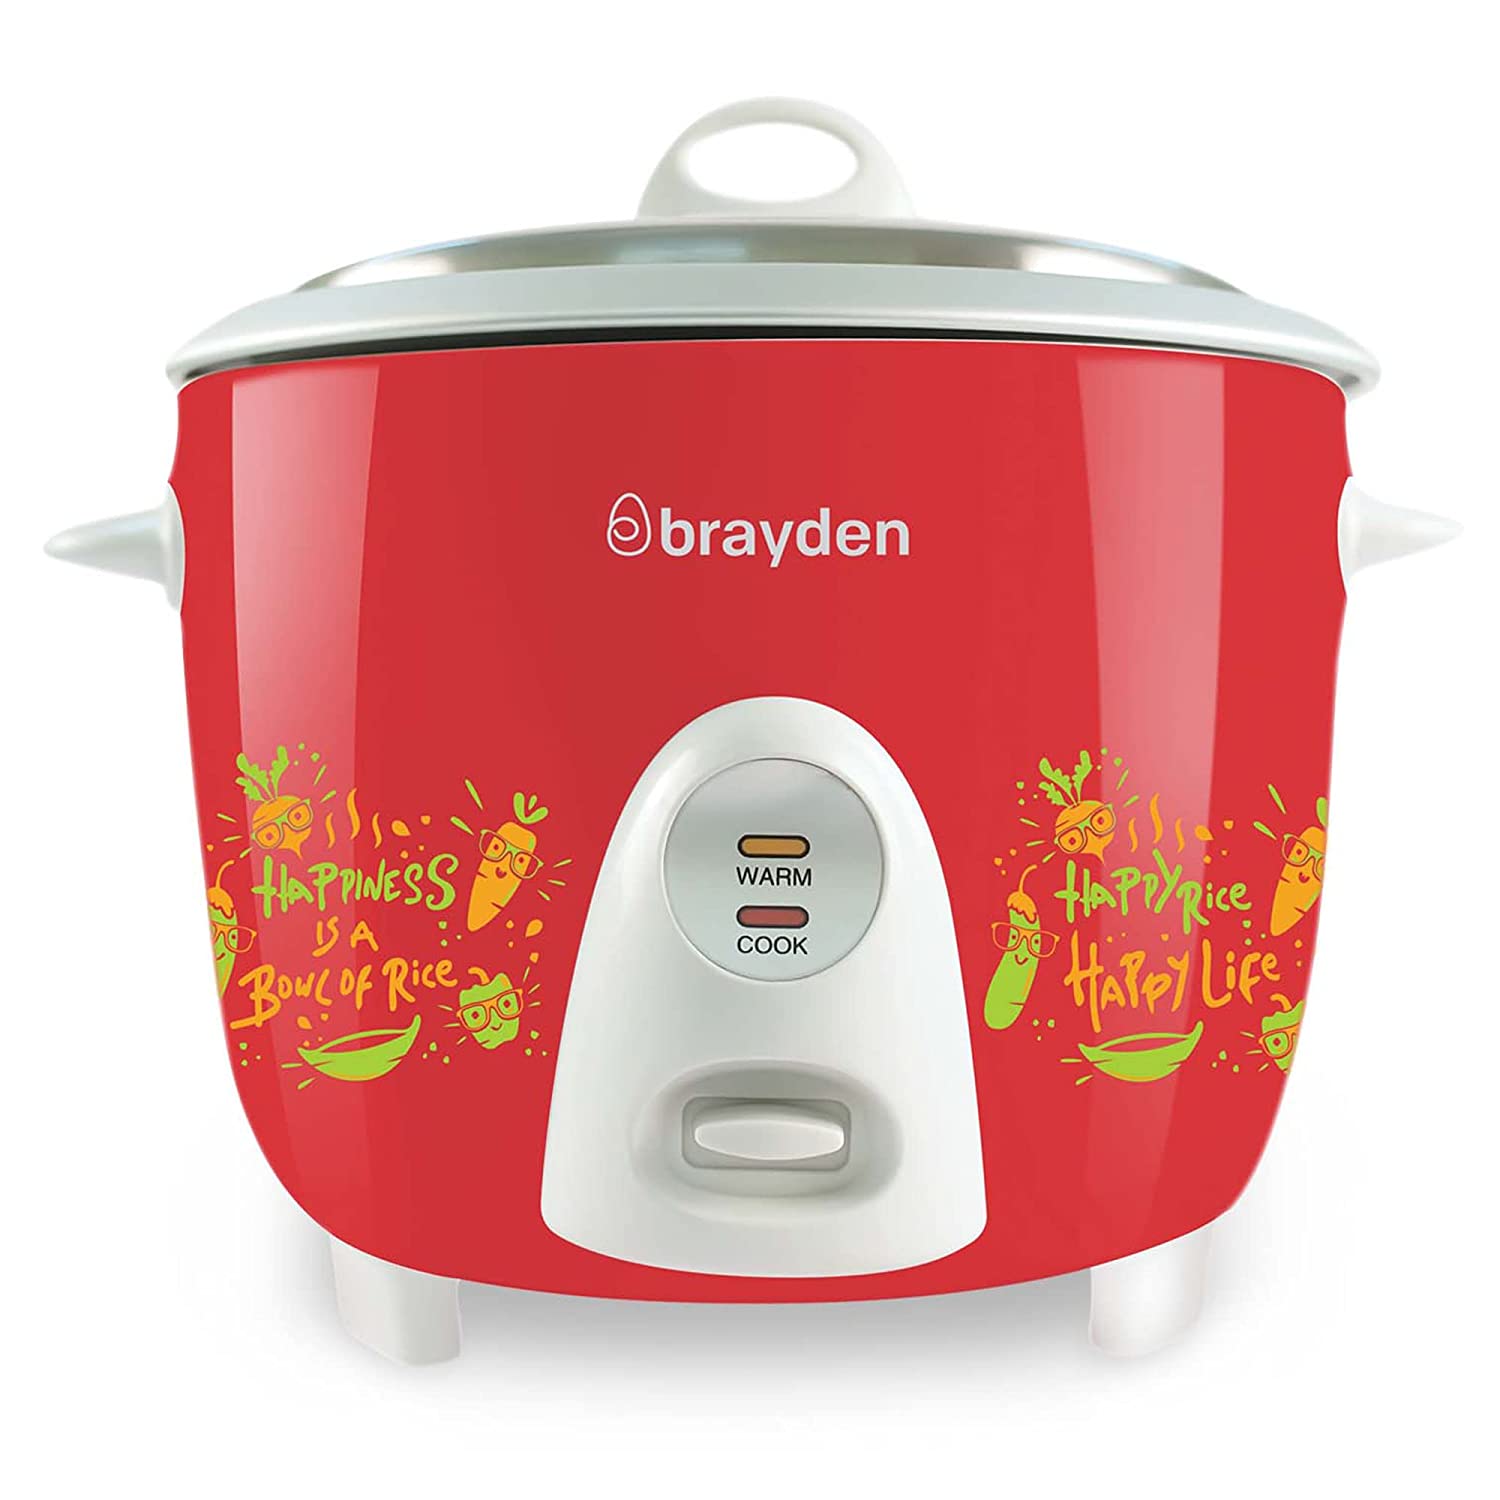 Brayden Electric Rice Cooker